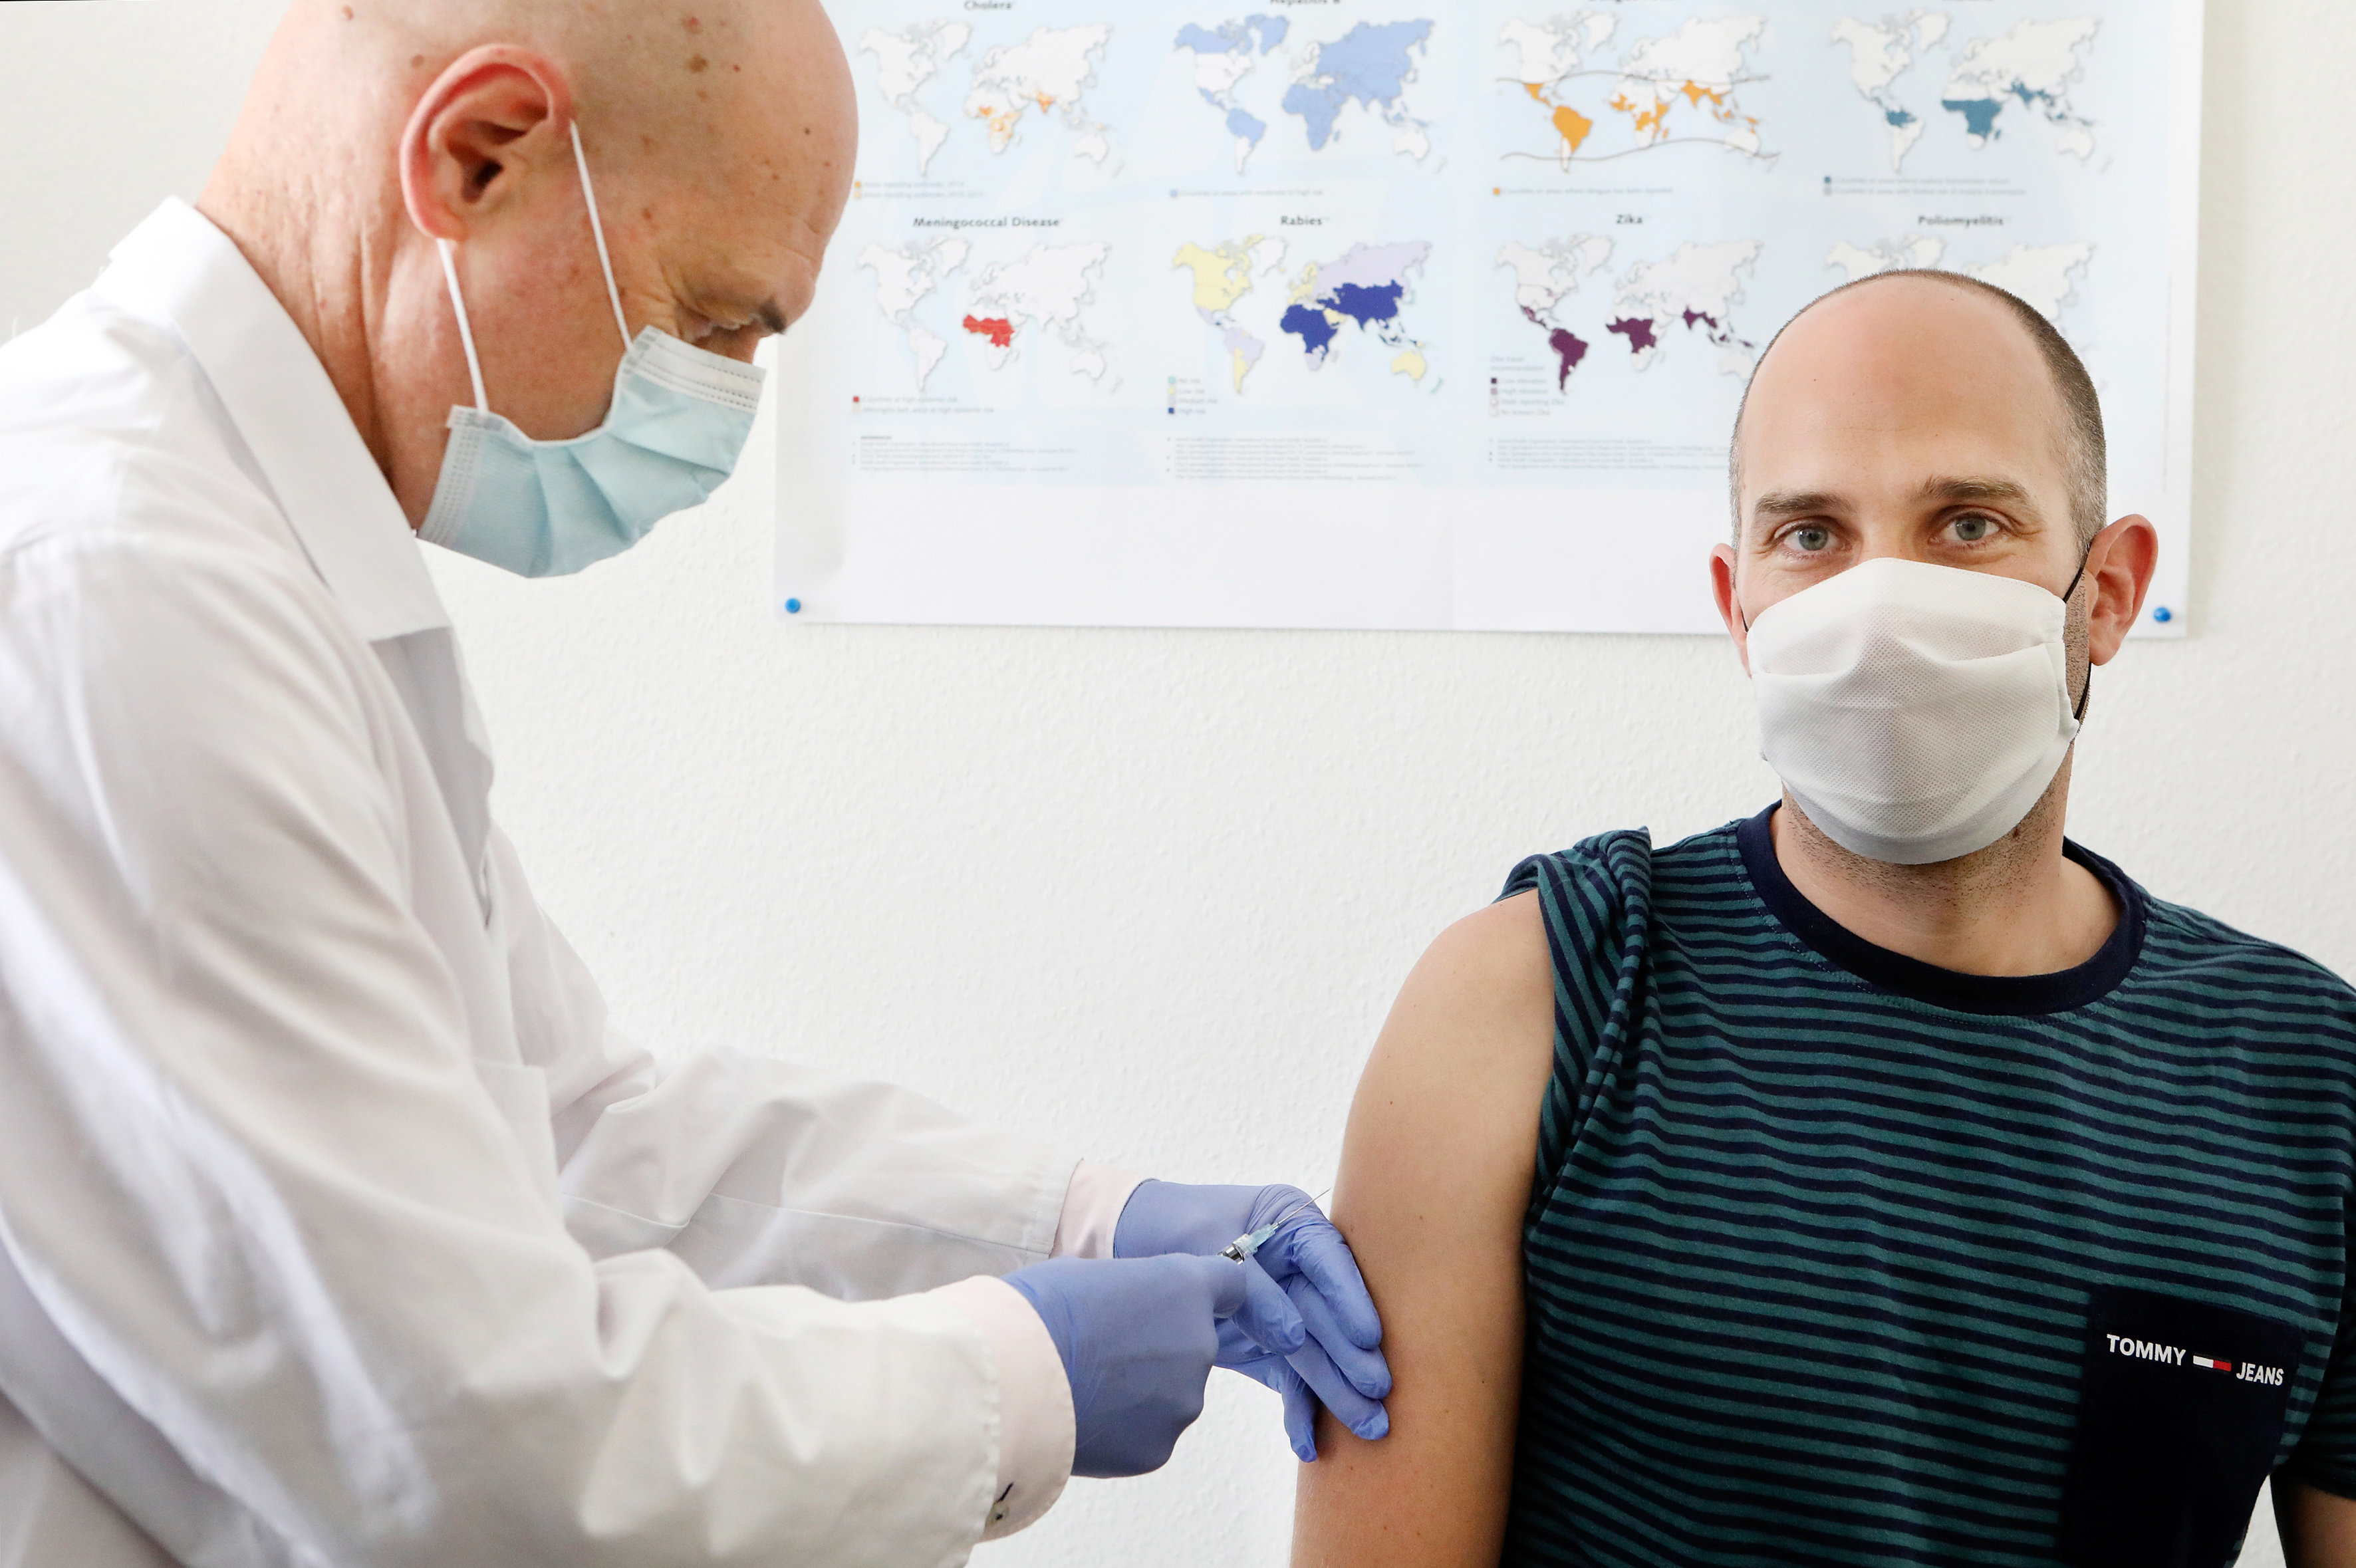 Der Tübinger Infektiologe Peter Kremsner gibt einem Probanden eine Spritze mit einem experimentellen Corona-Impfstoff. | picture alliance / Pressebildage